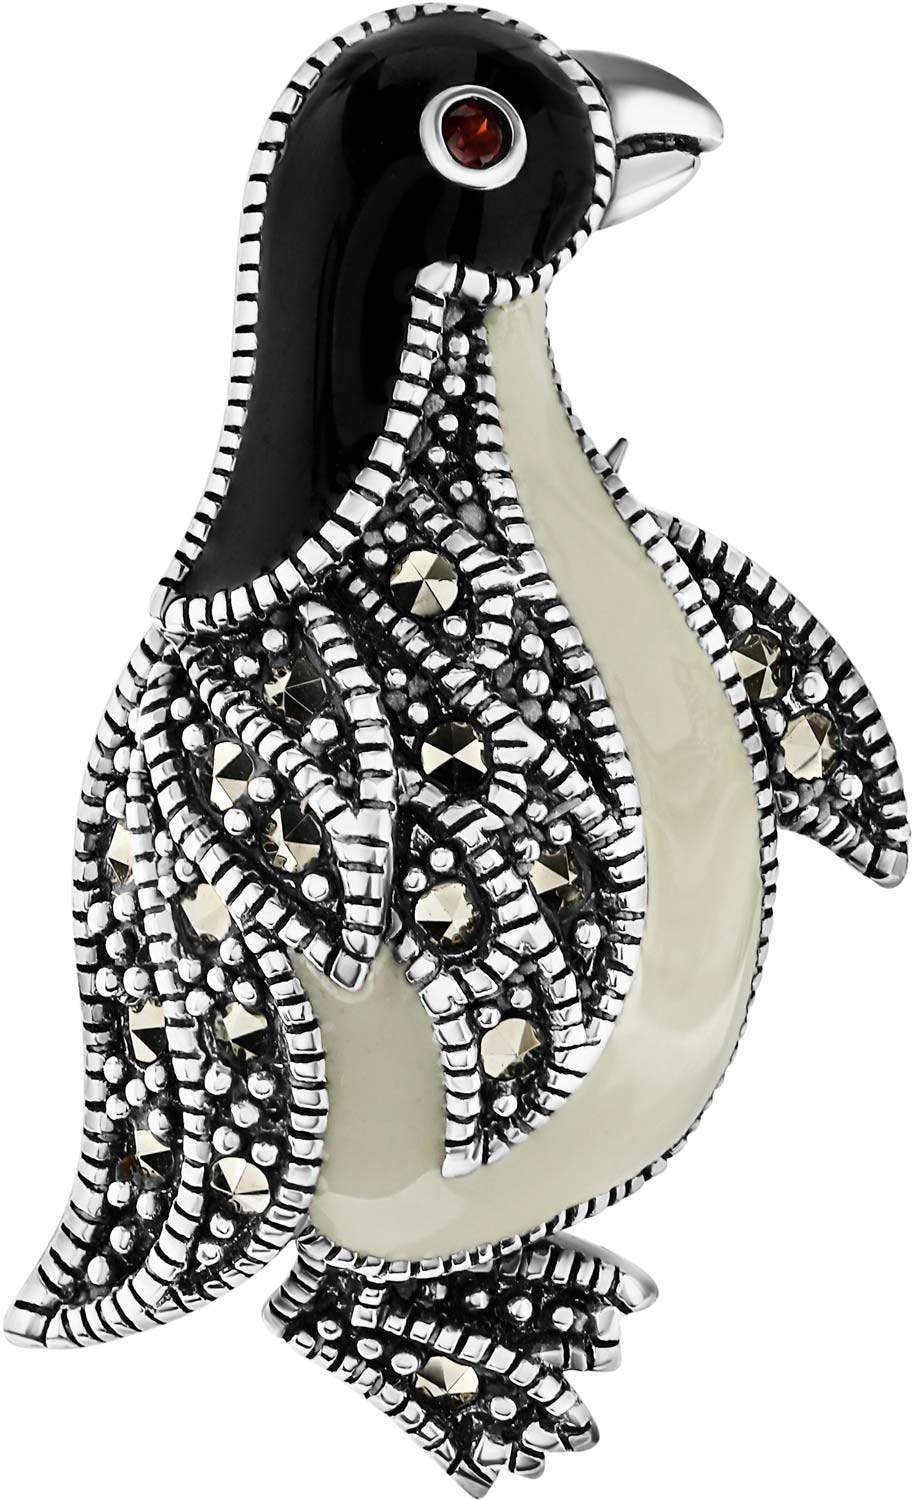 Серебряная брошь ''Пингвин'' Марказит HB779-granat-mr с эмалью, гранатом, марказитами Swarovski